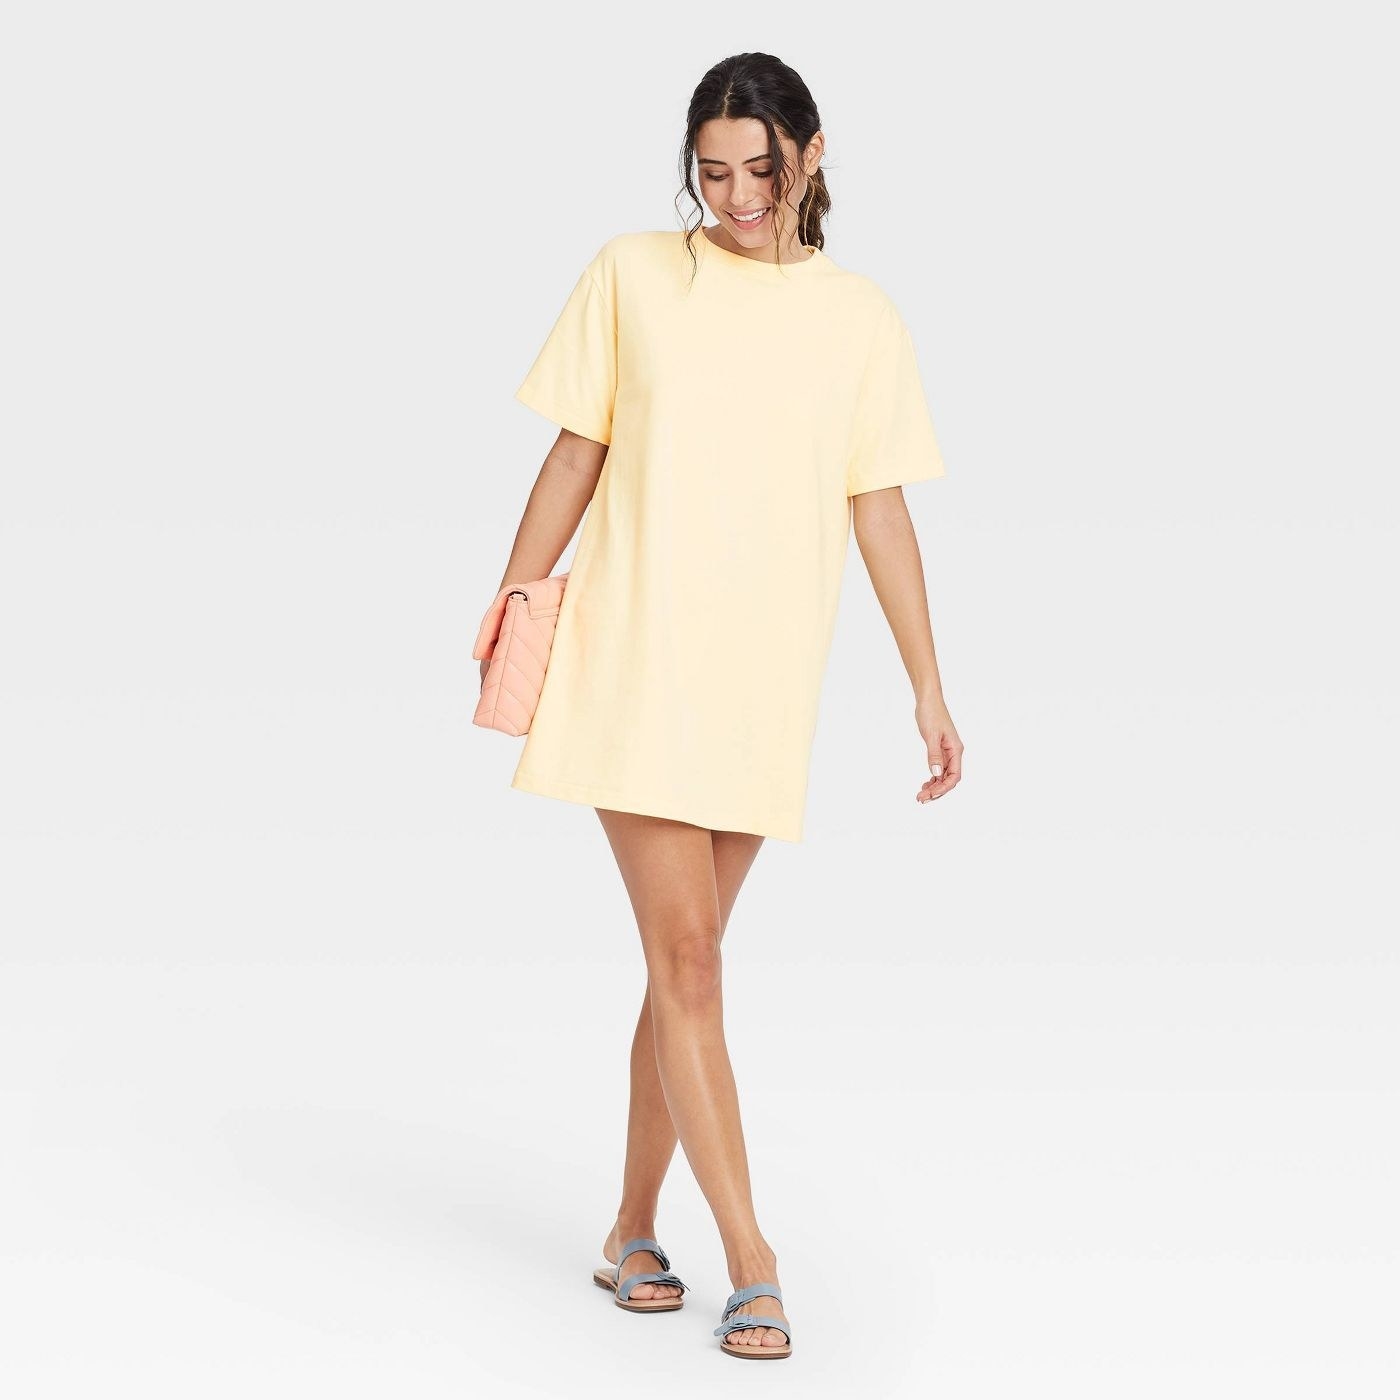 A model wearing a light yellow t shirt dress